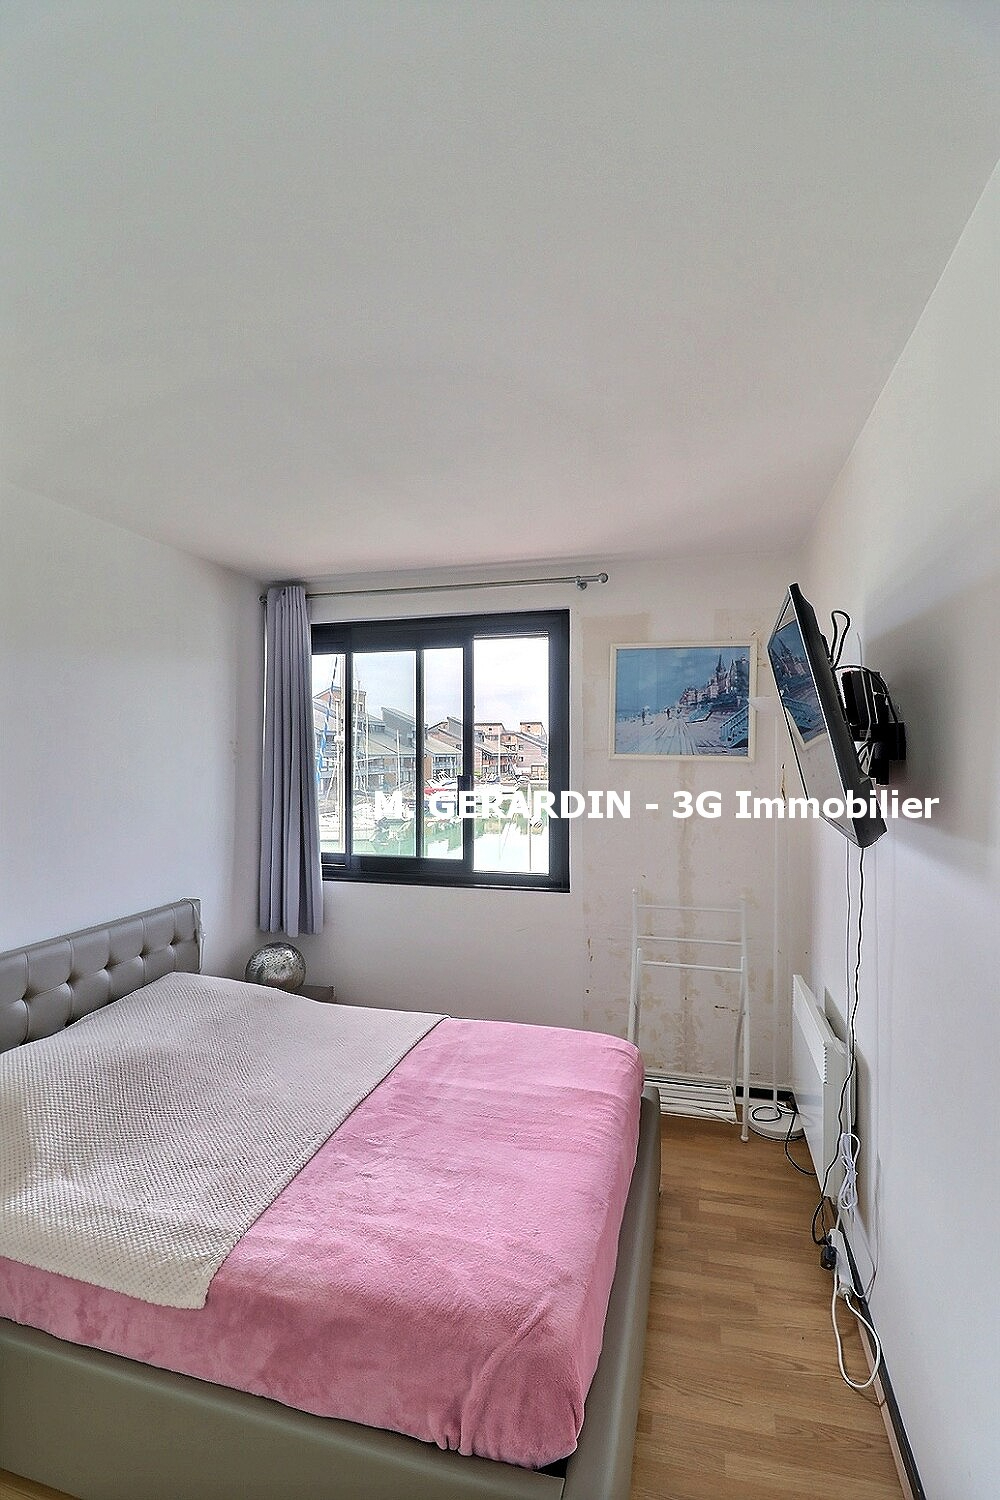 Photo mobile 5 | Deauville (14800) | Appartement de 53.00 m² | Type 3 | 357000 € |  Référence: 187746PG